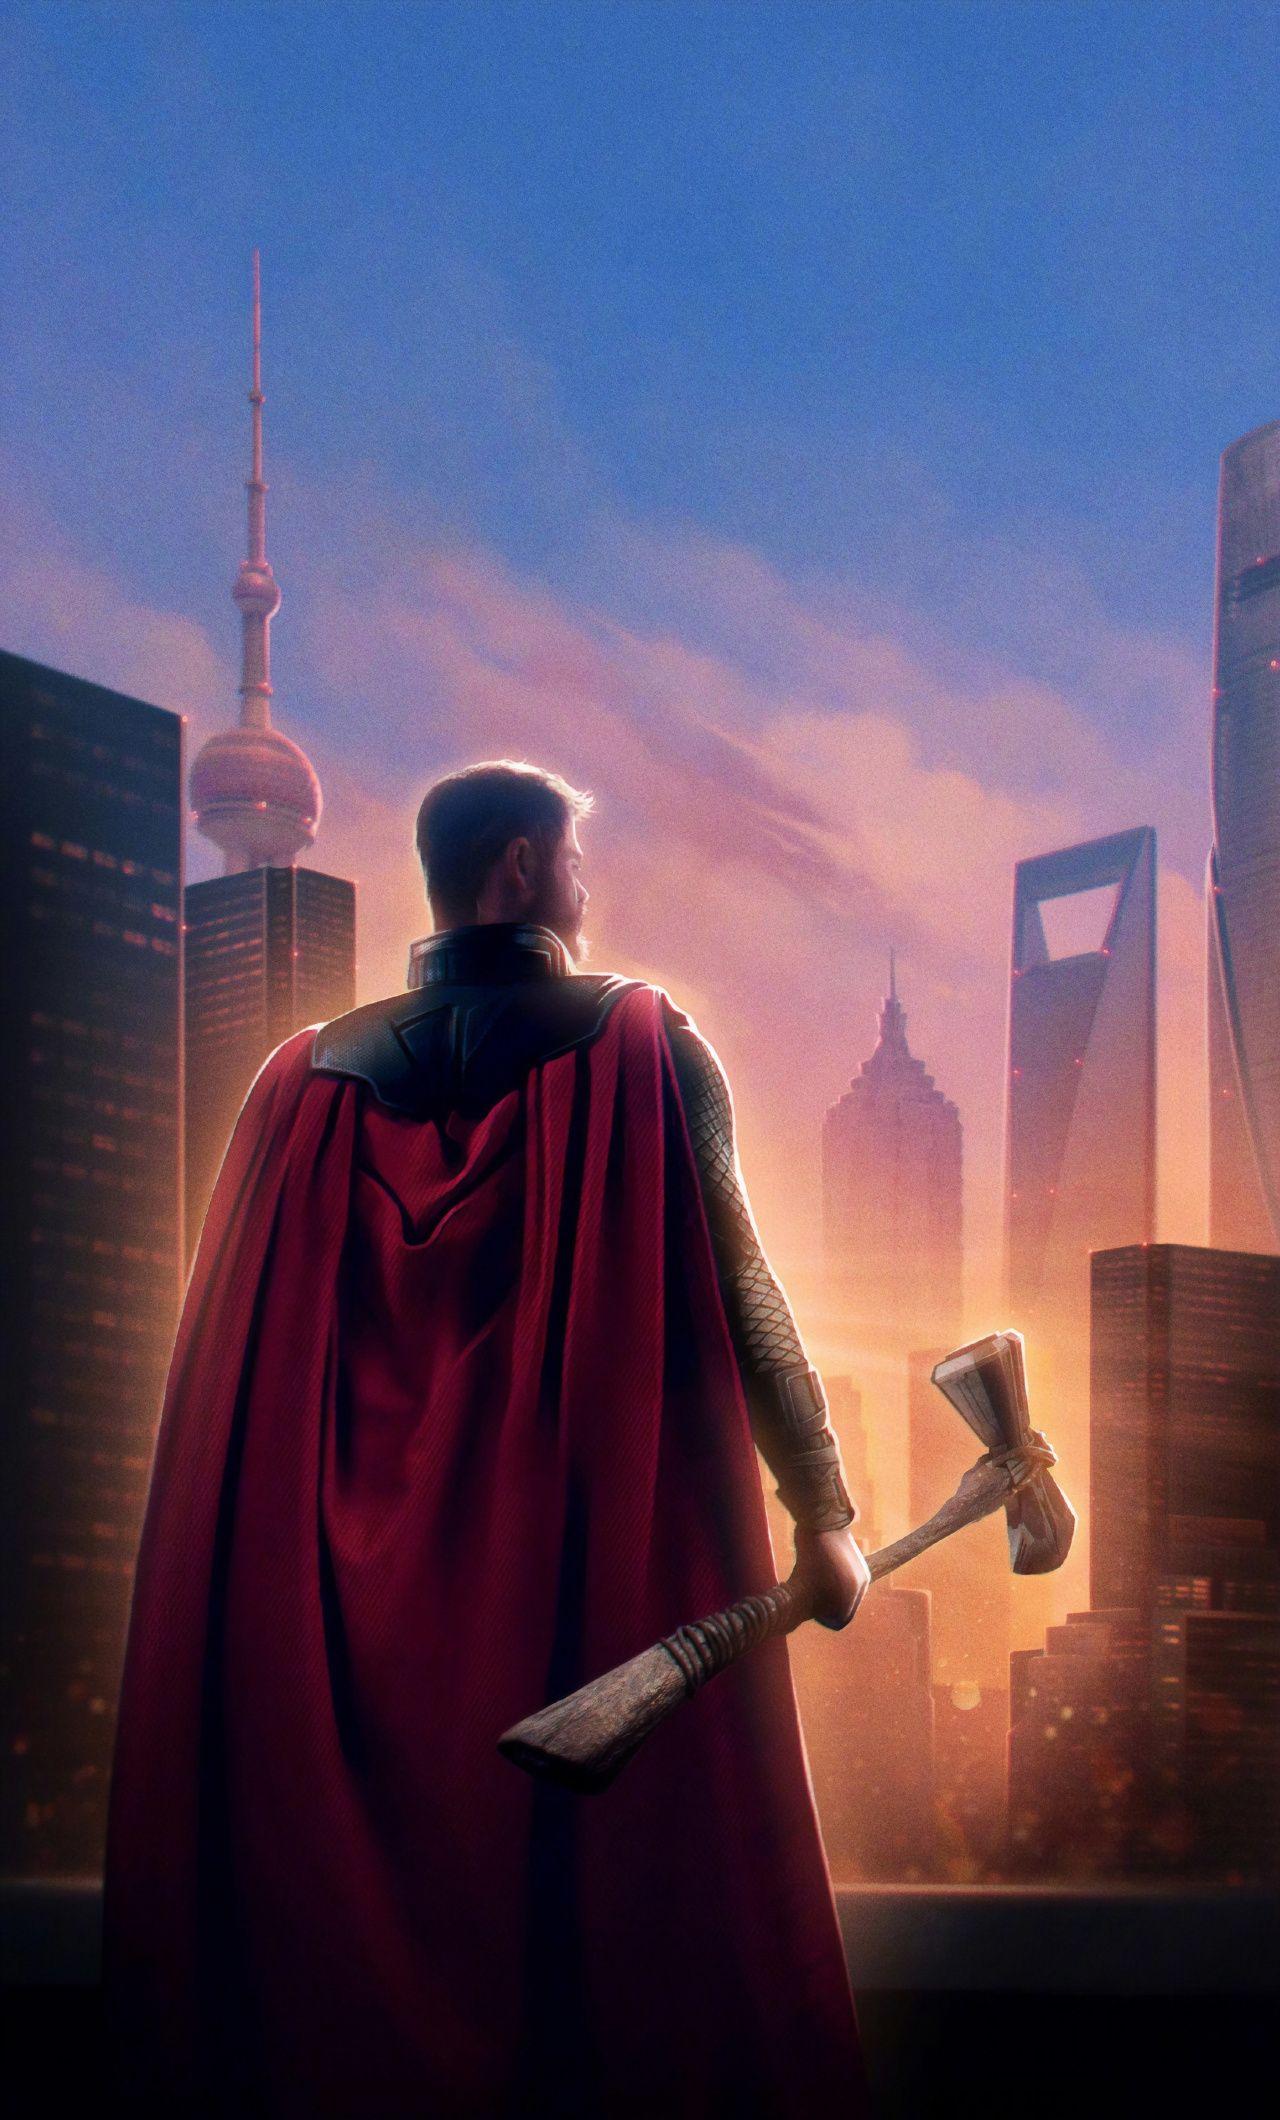 Thor, Avengers: Endgame, 2019 movie wallpaper. Movie Wallpaper